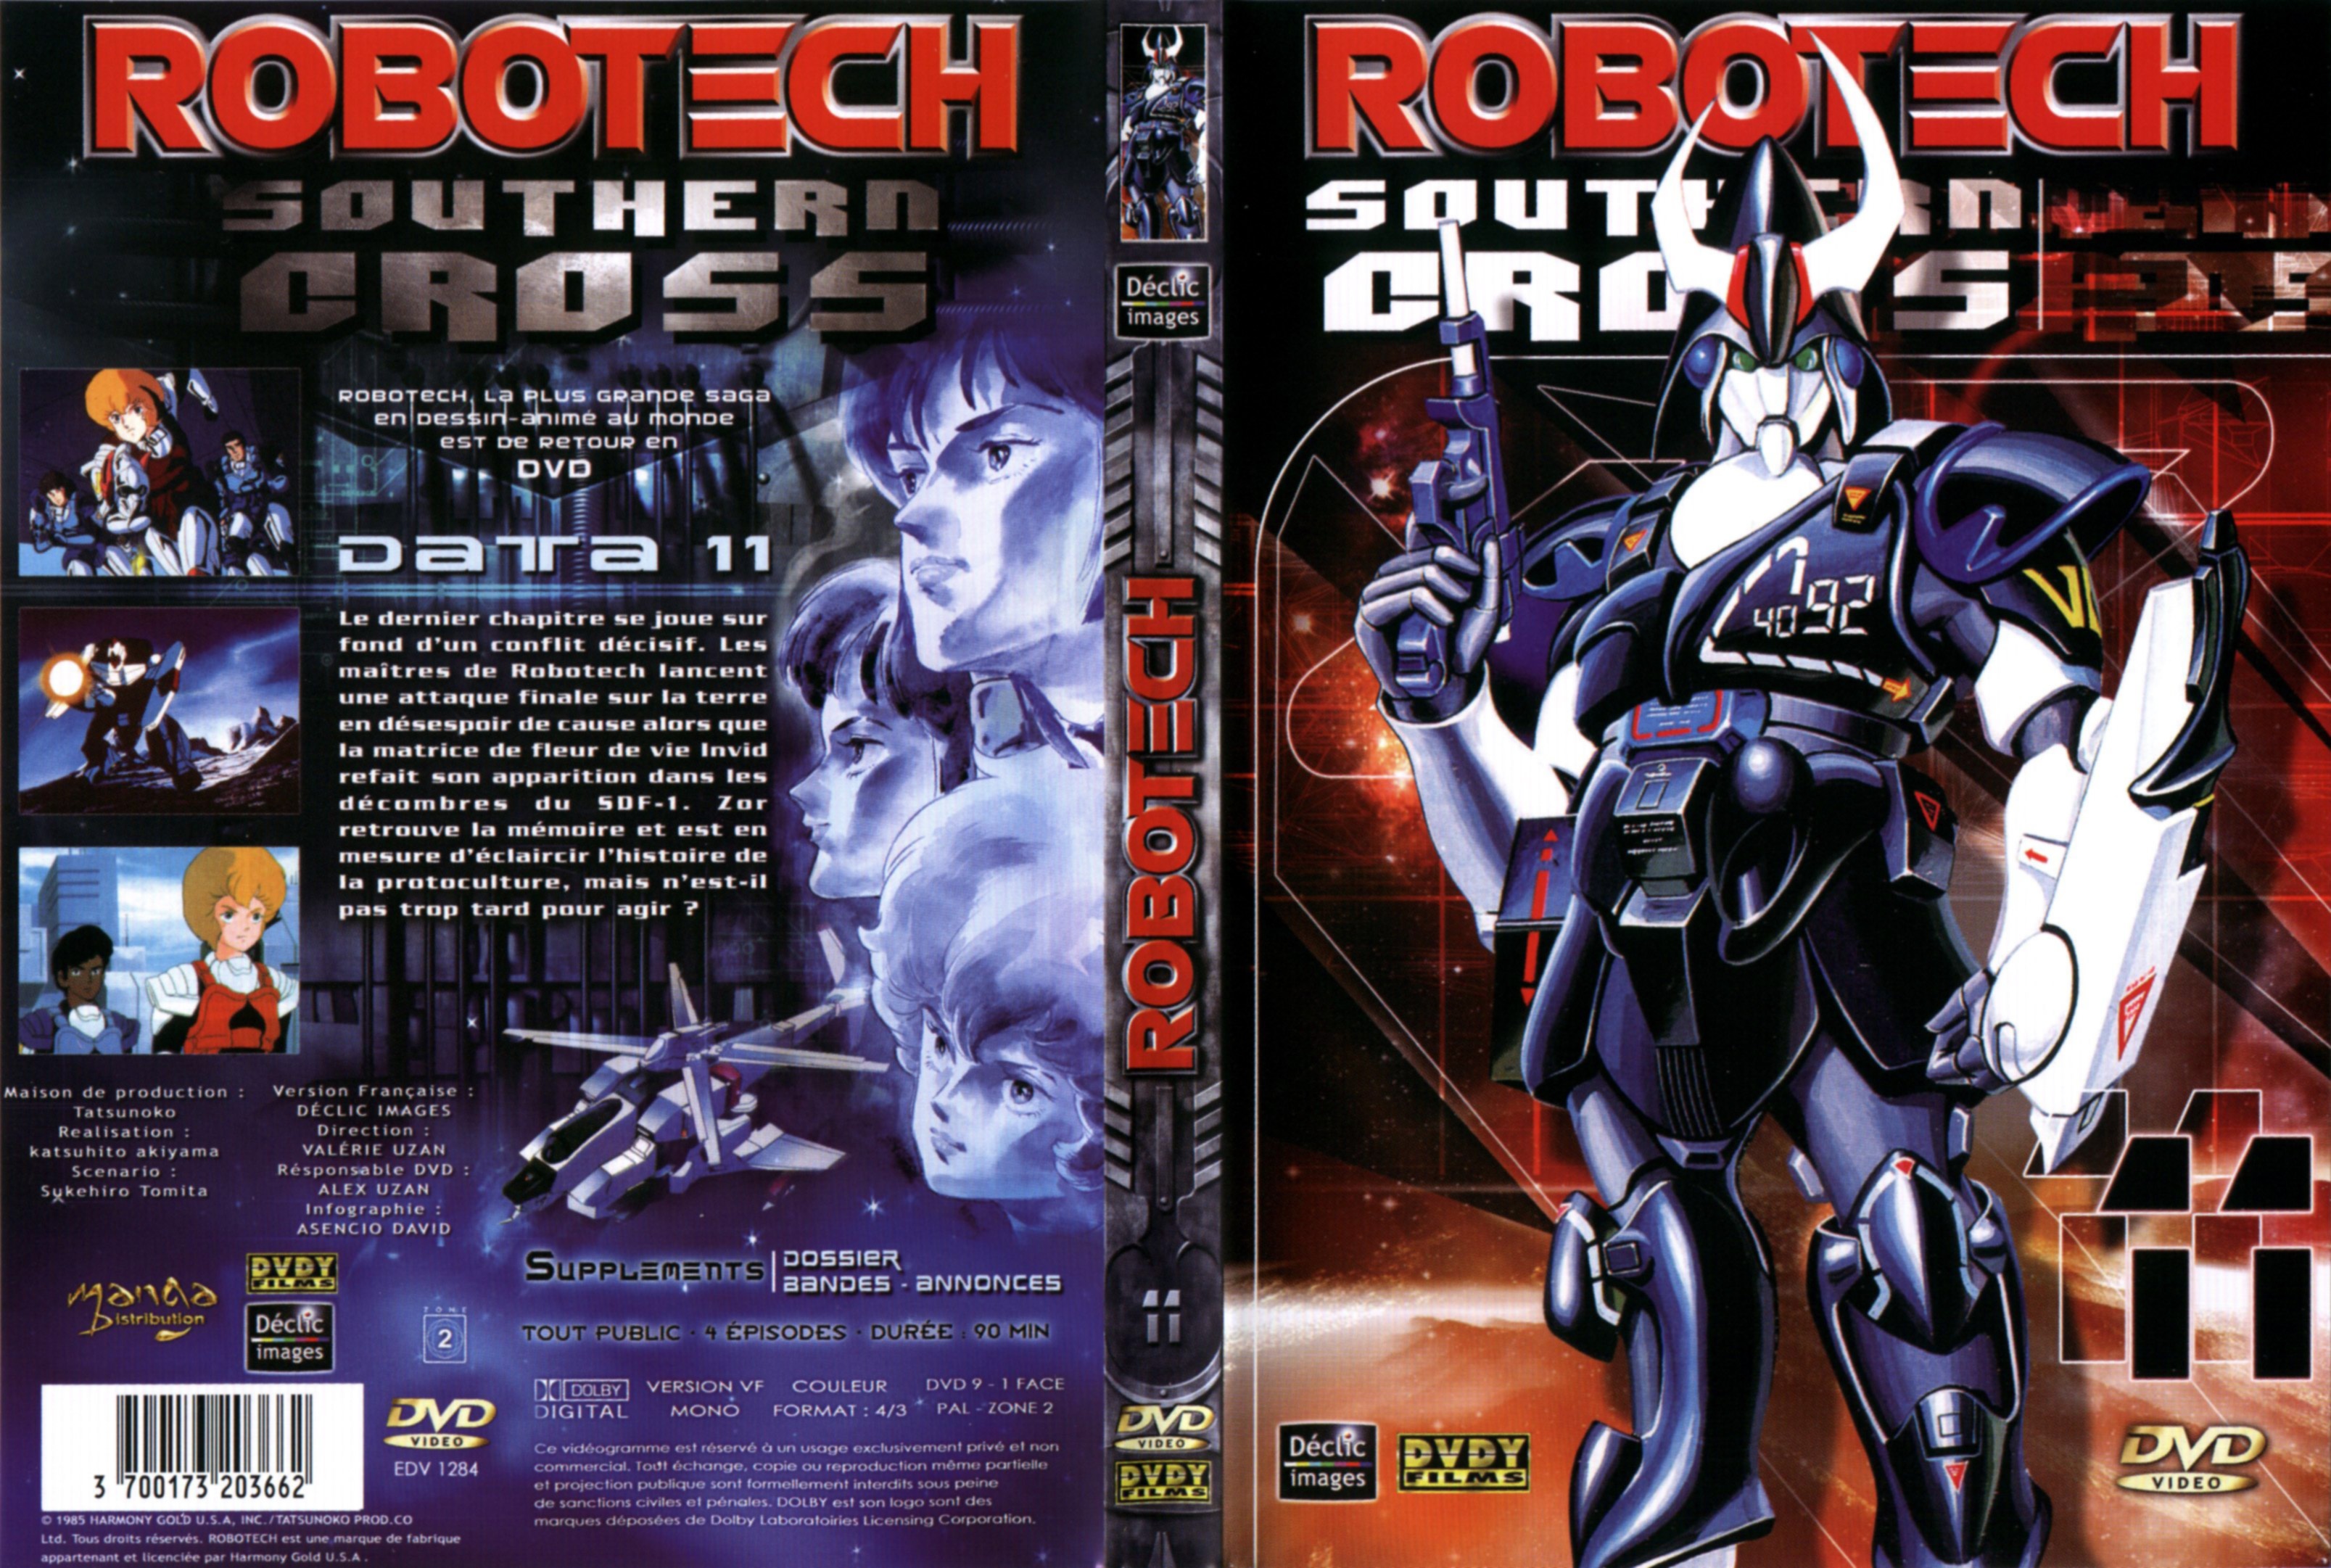 Jaquette DVD Robotech Southern cross vol 11